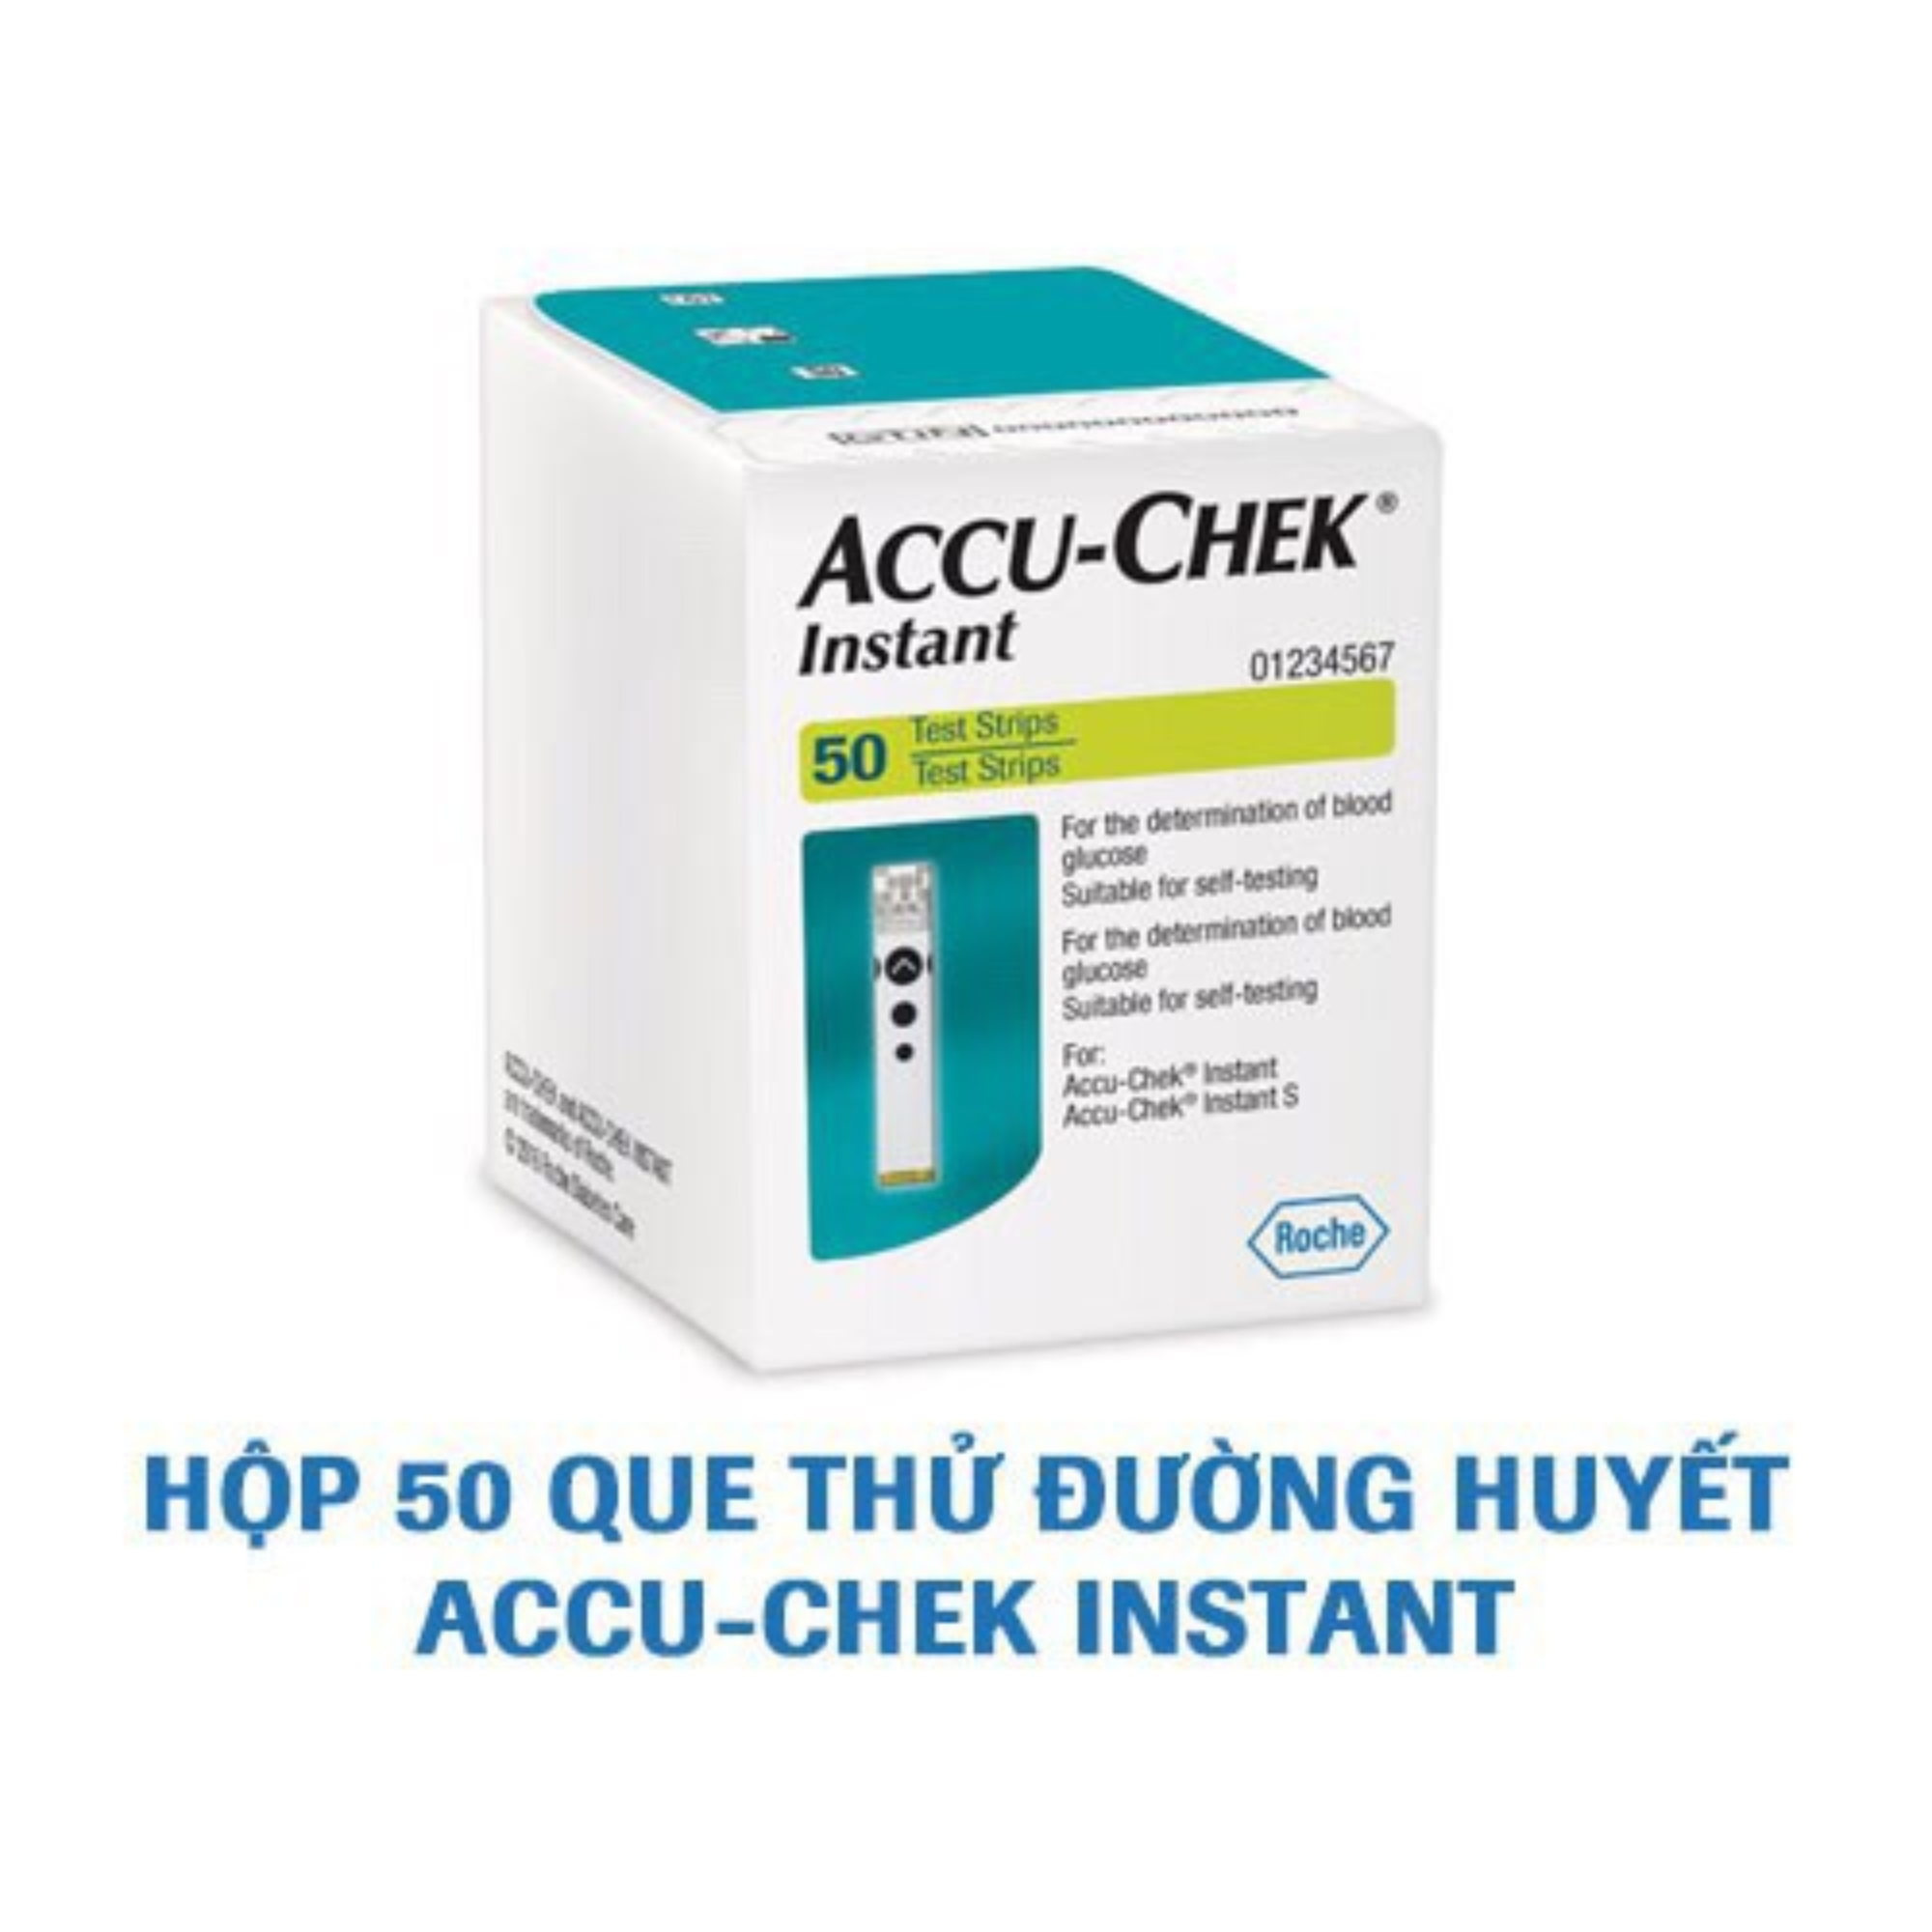 Hộp 50 Que thử đường huyết Accu-Chek Instant, Roche, NK chính ngạch, tem niêm phong, Nhãn phụ TV